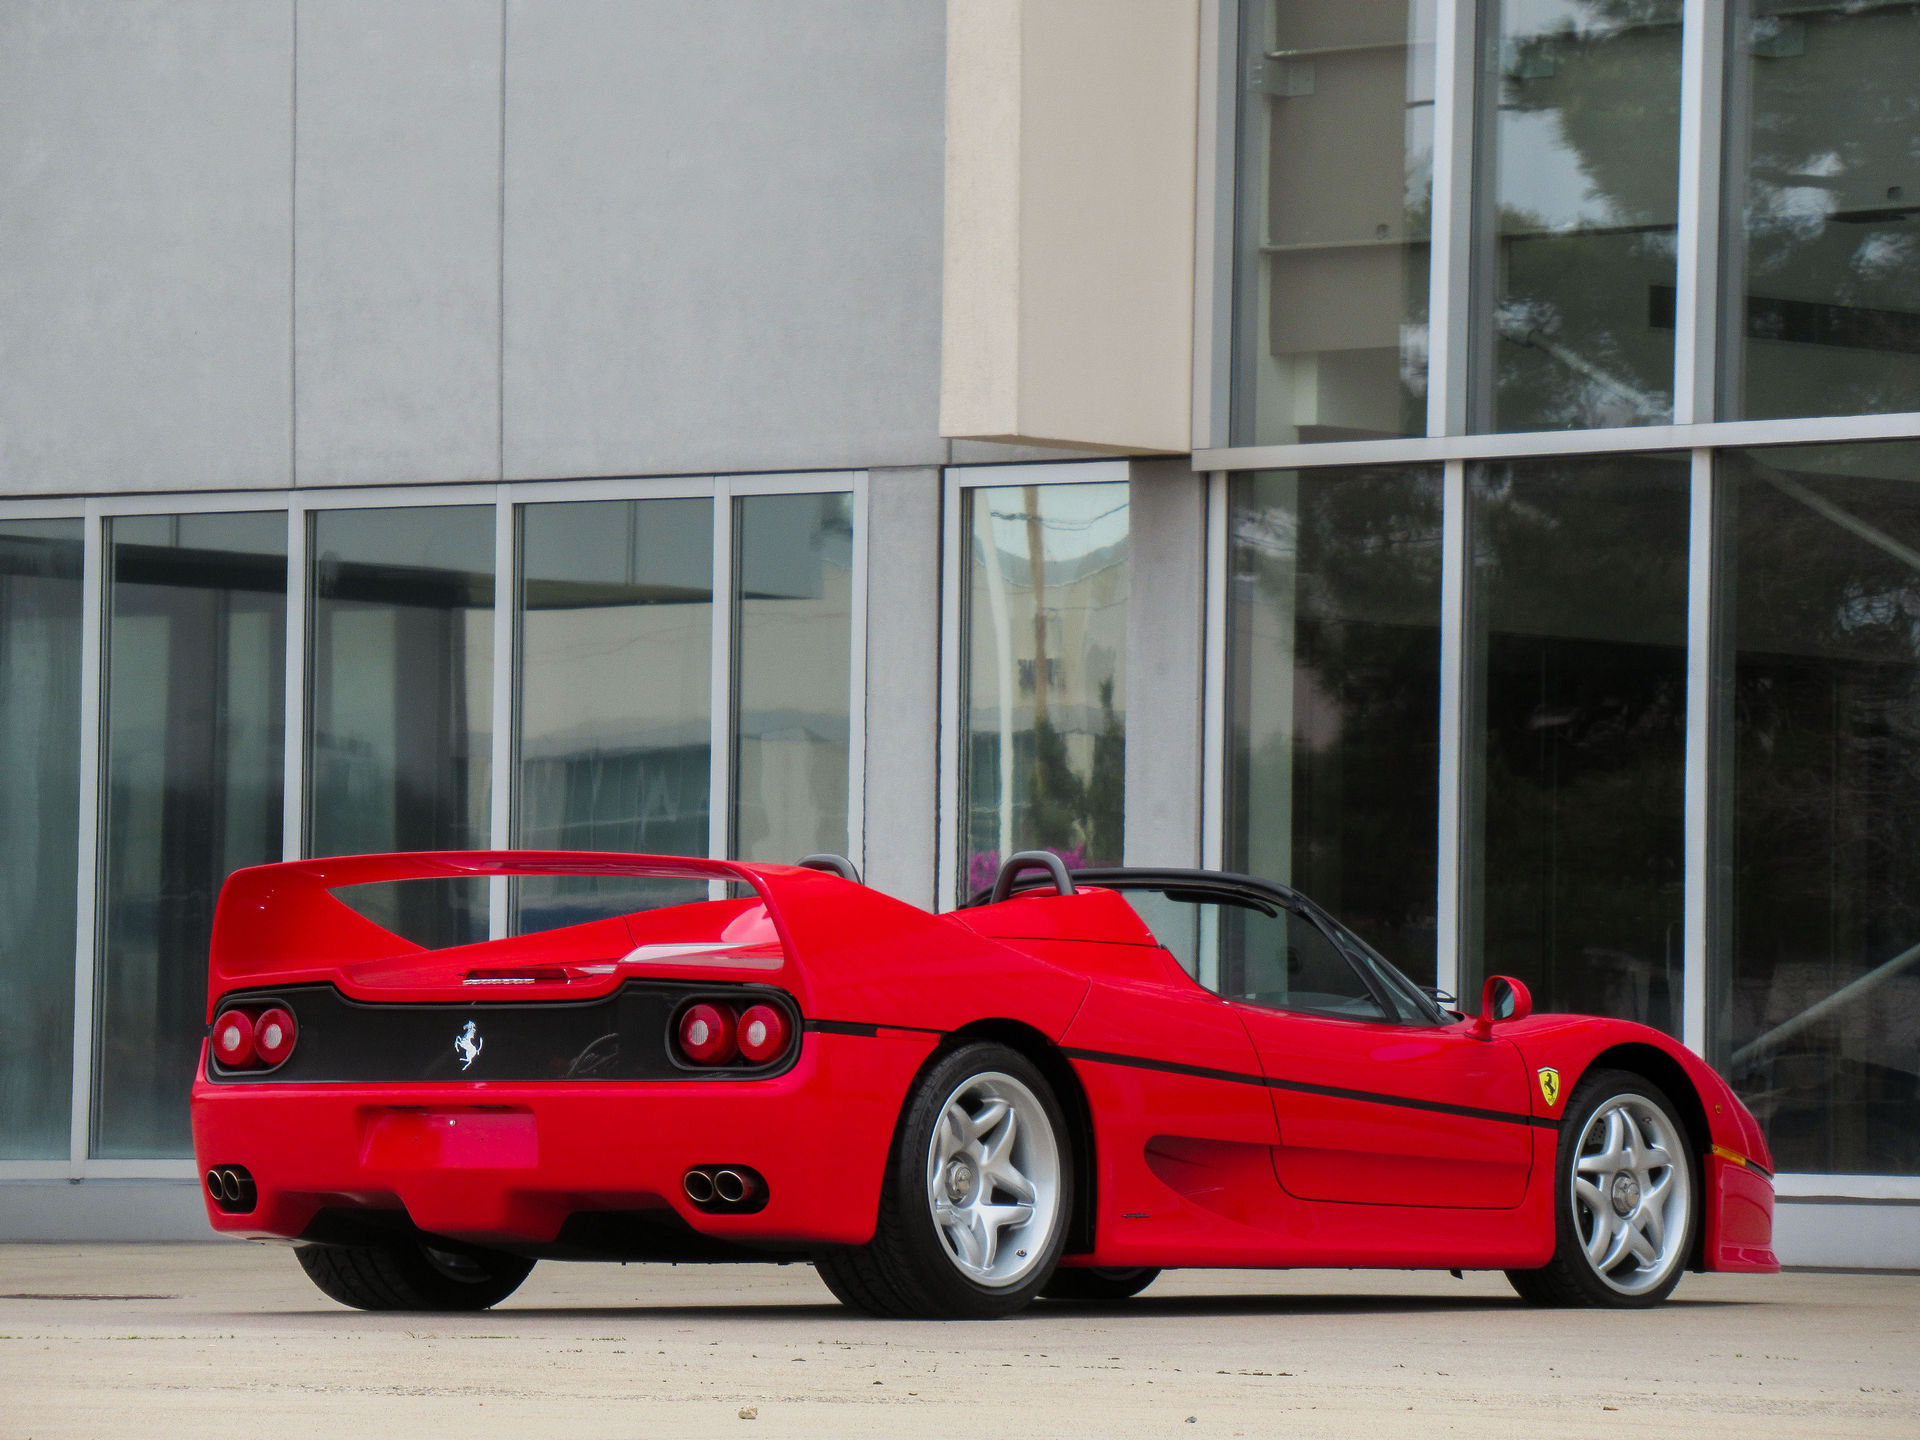 ส่องความงาม Ferrari F50 ปี 1995 ที่ราคาประมูลอาจแตะเกือบร้อยล้าน! (ภาพ)